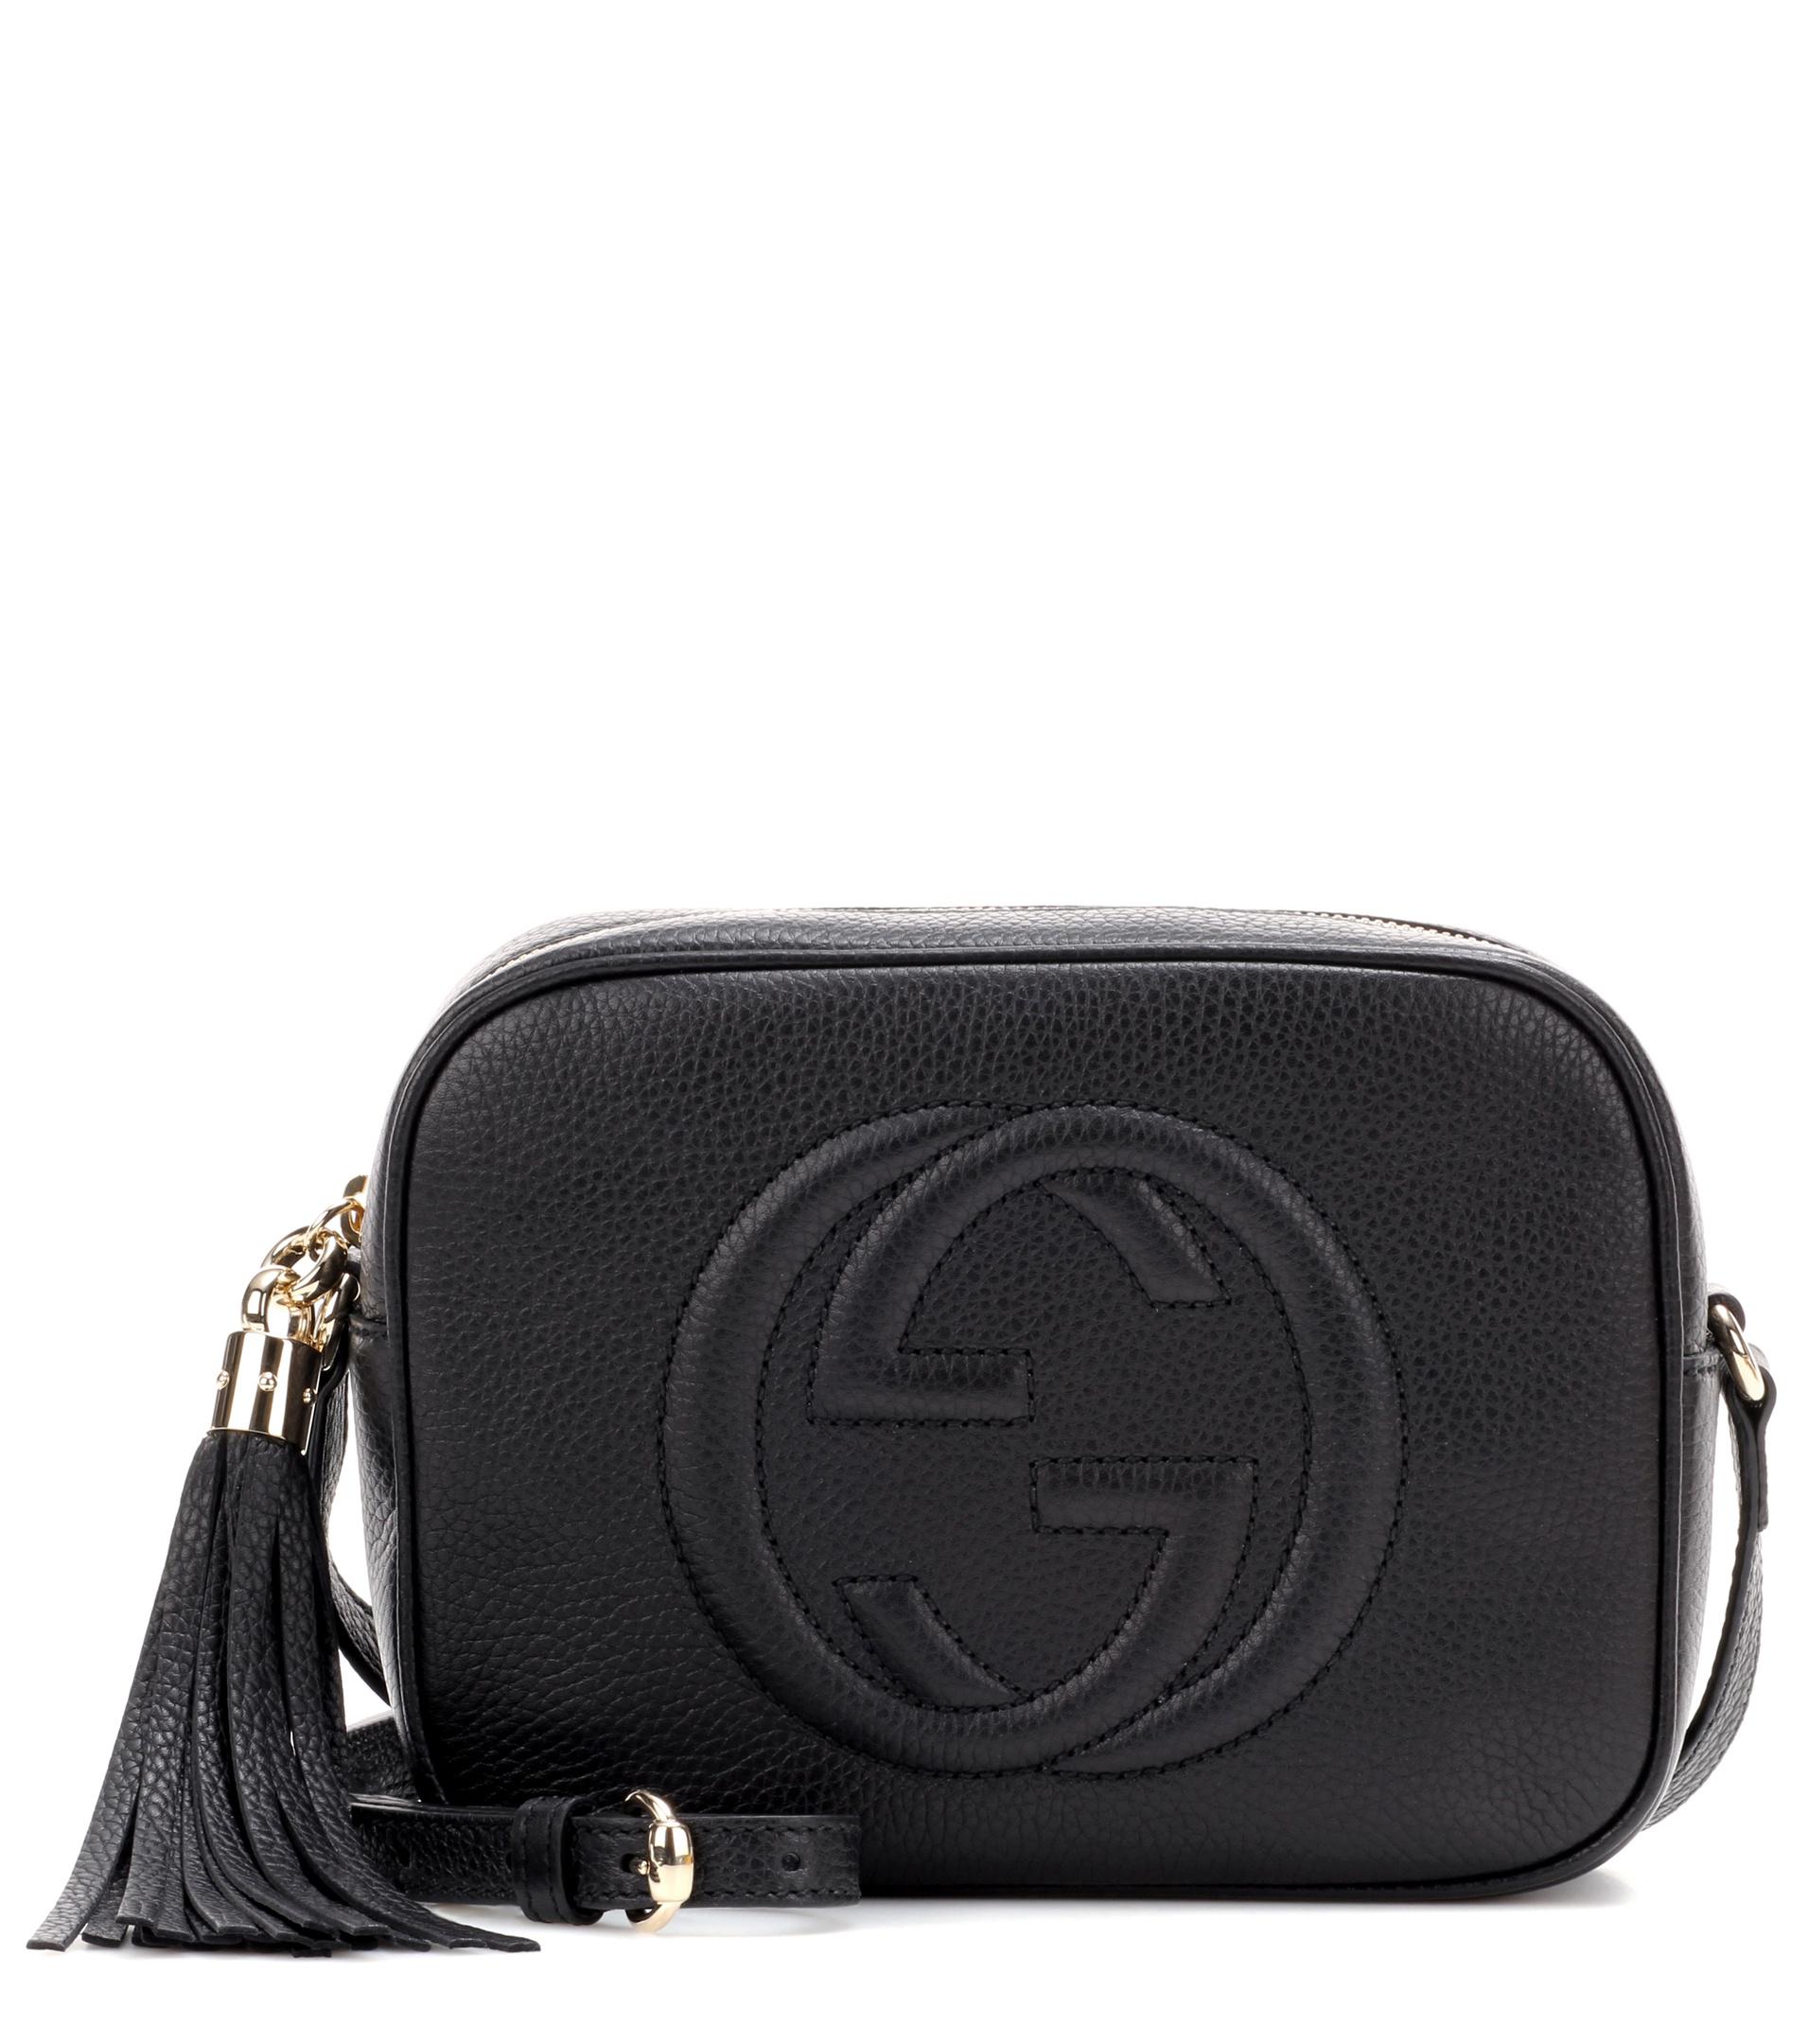 Gucci Marmont GG Mini Matelassé Leather Cross-body Bag in Nero (Black) - Lyst